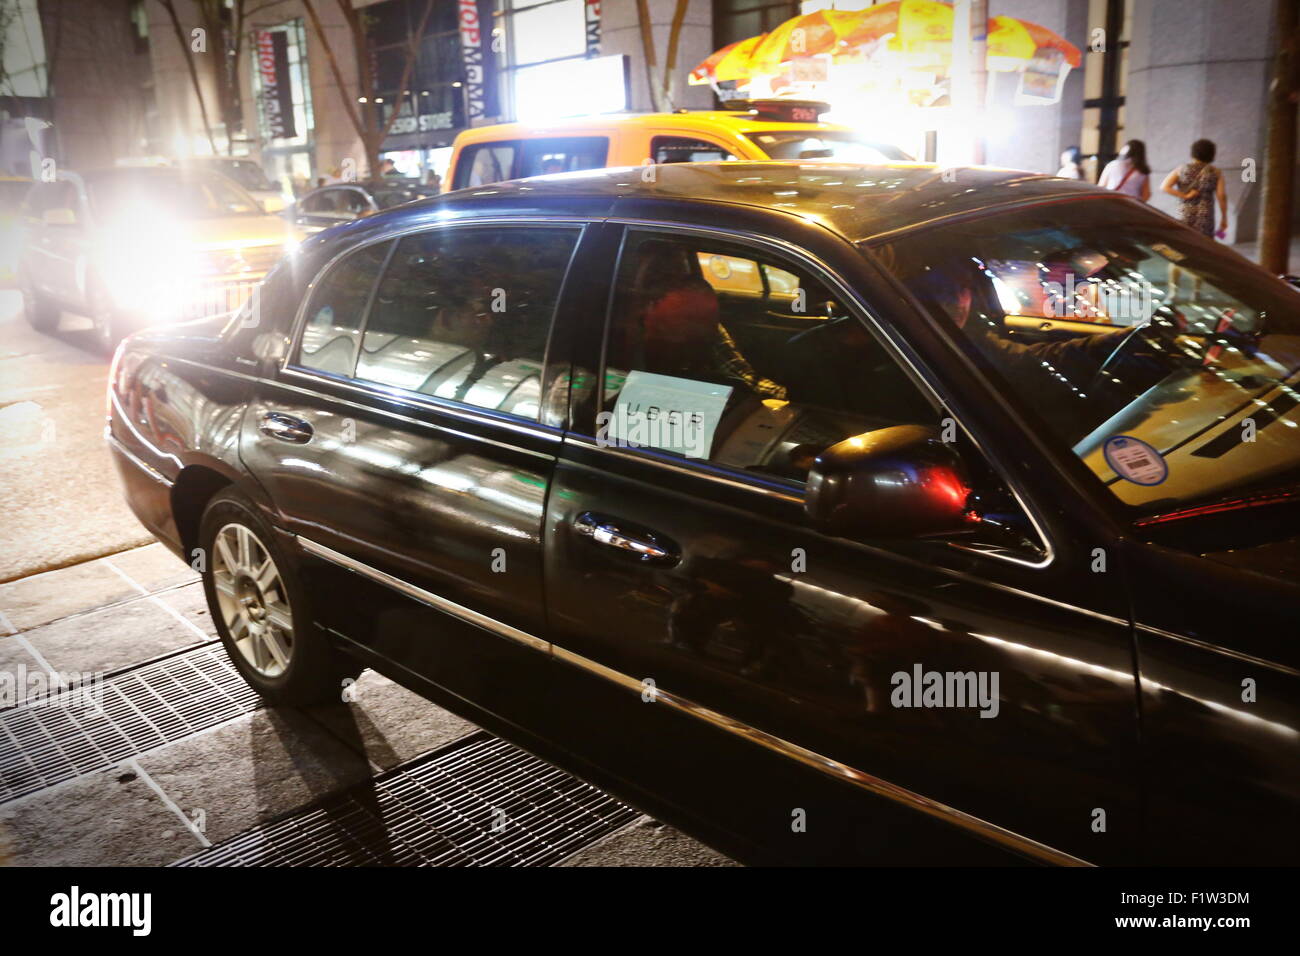 Nueva York está teñida de negro. Taxi amarillo, uno de los símbolos de la ciudad, tiende más a los negros, gracias a la invasión de coches Uber normalmente negra. Nueva York, 6 de septiembre de 2015. Foto de stock